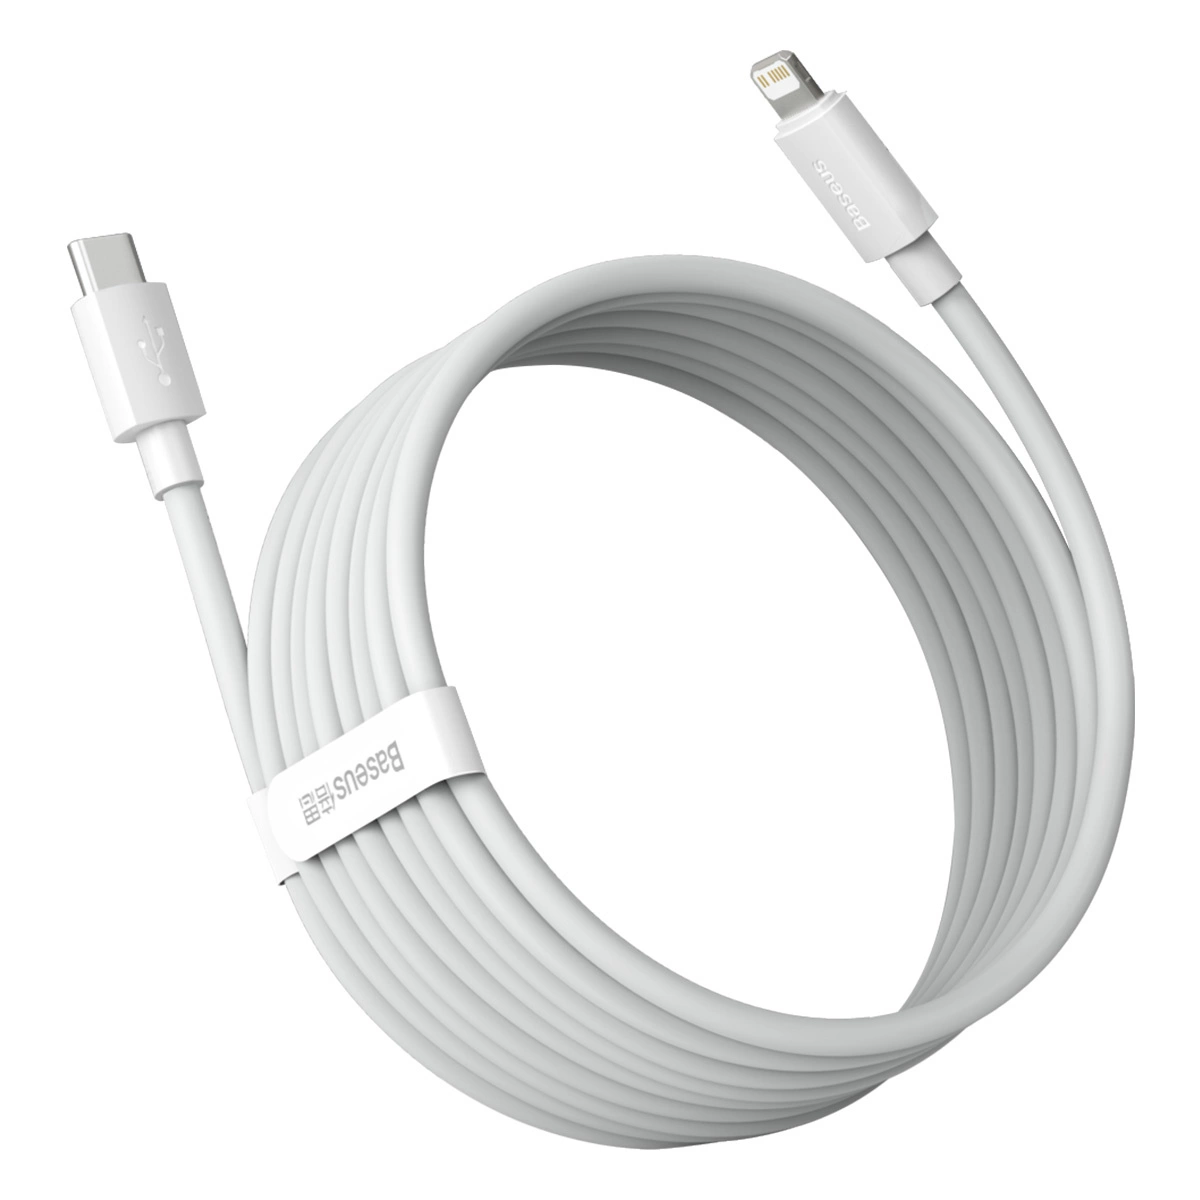 Baseus Simple Wisdom-Kabel mit Lightning-/USB-C-Anschlüssen mit einer Leistung von bis zu 20 W auf weißem Hintergrund